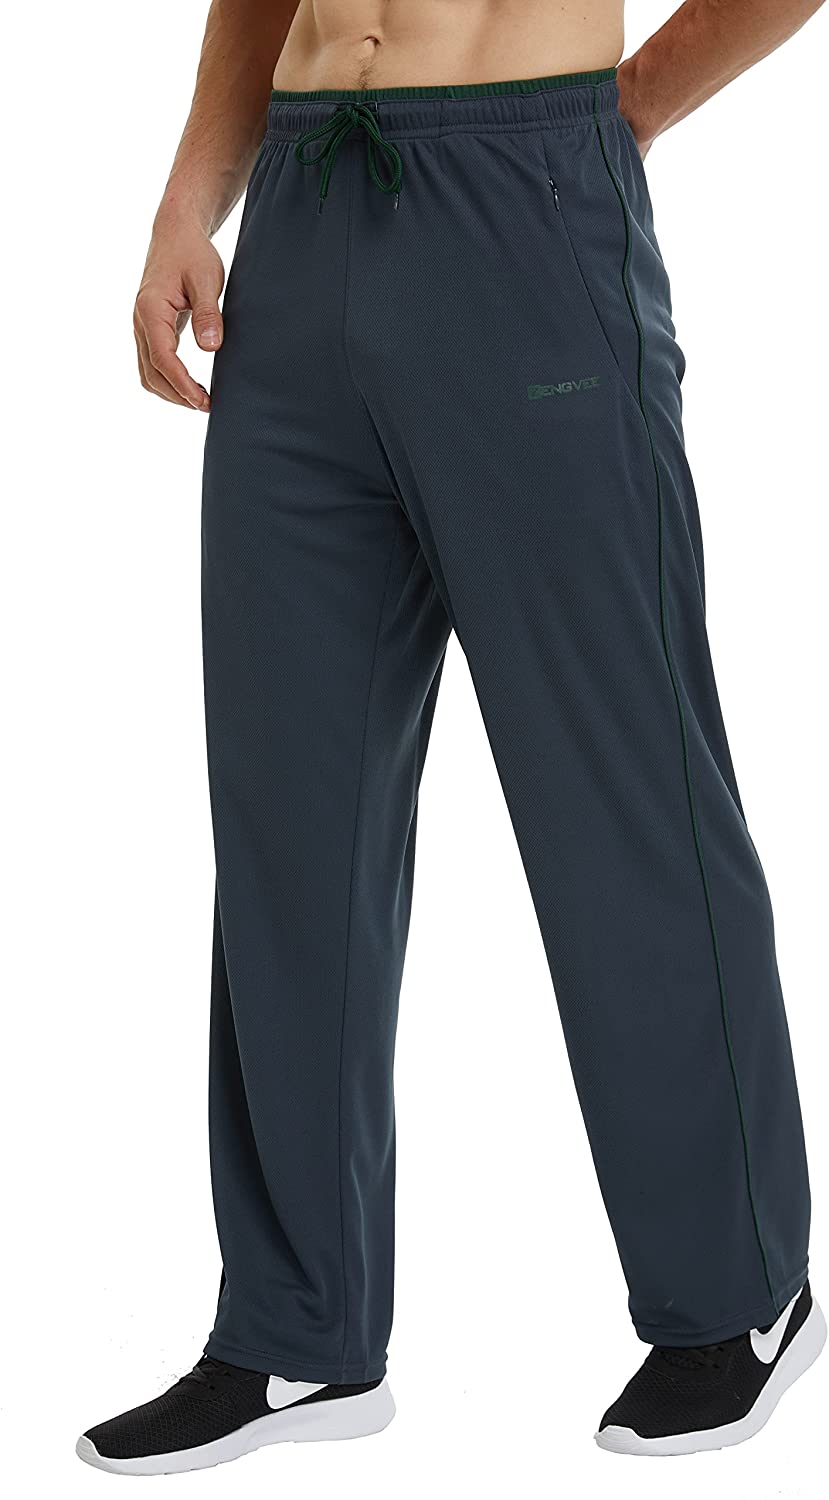 ZENGVEE Men's Sweatpants with Zipper Pockets Open Bottom Athletic Pants ...